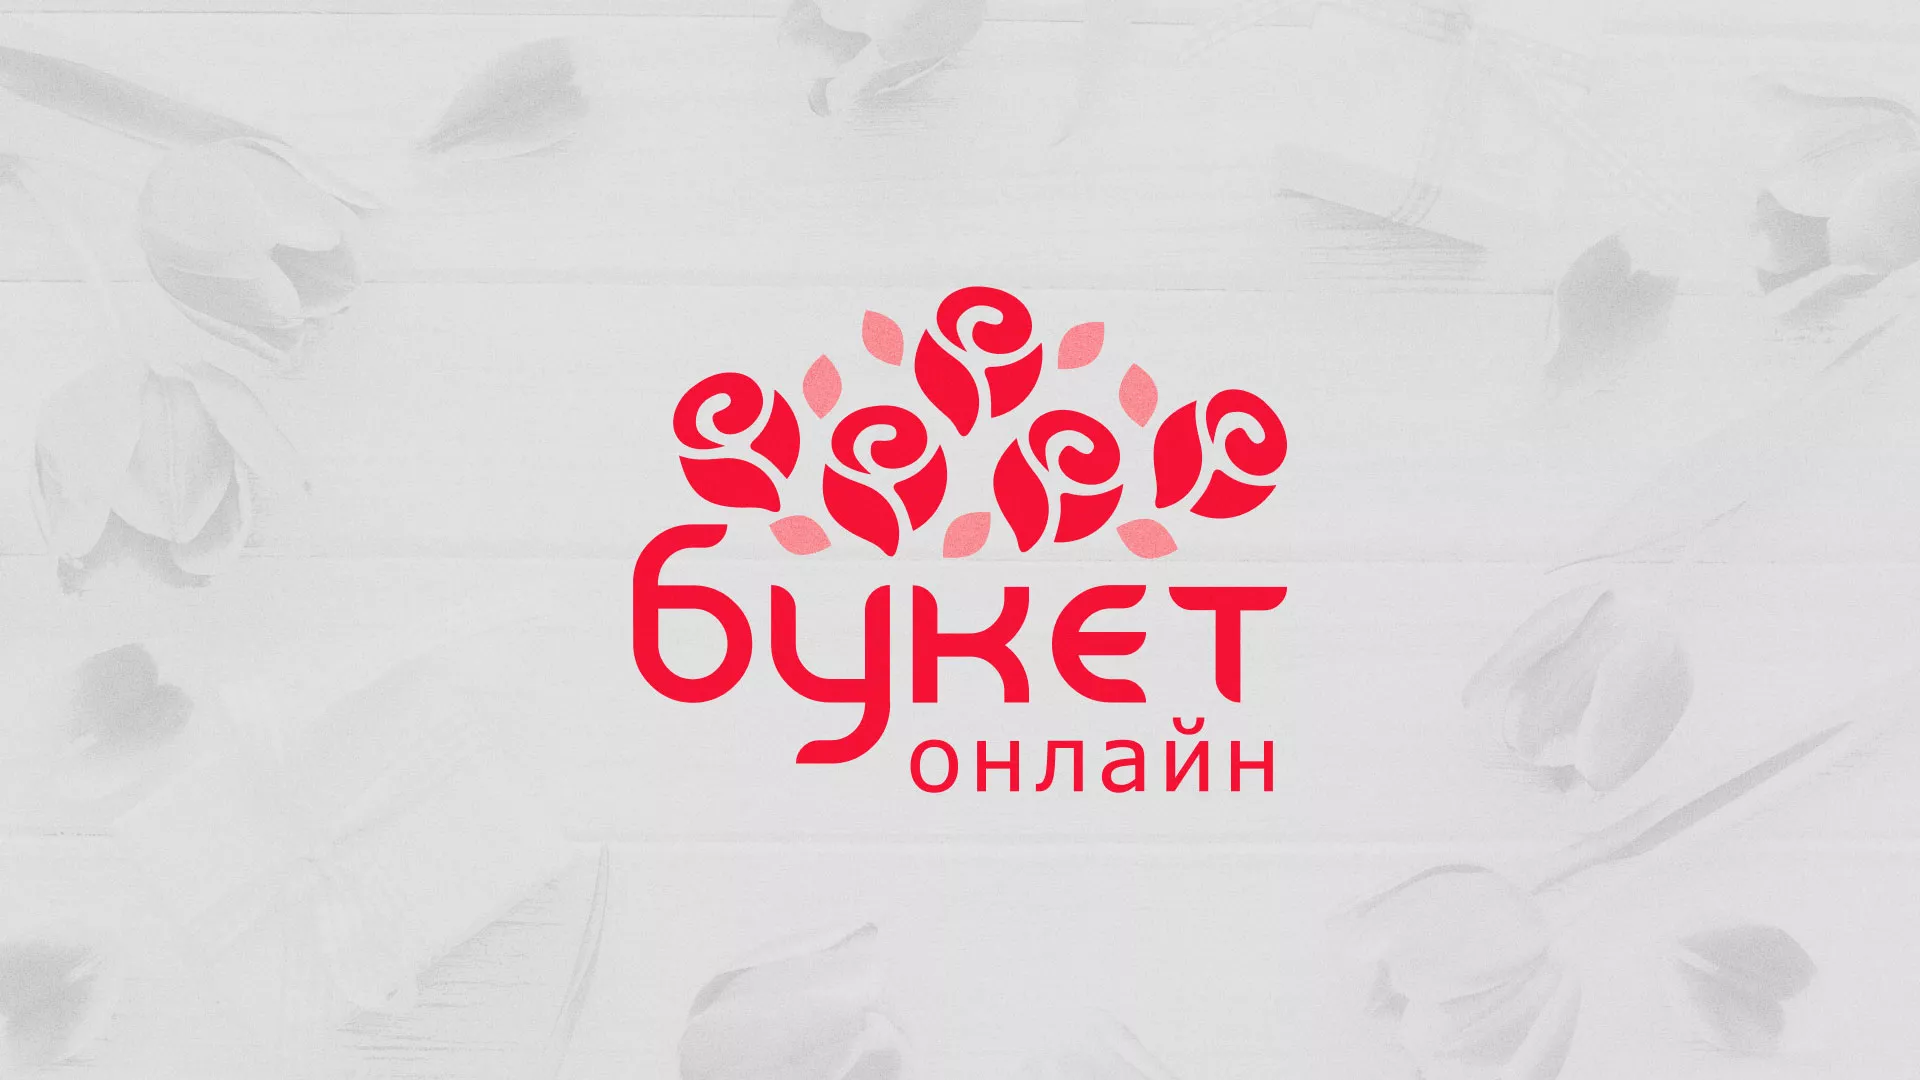 Создание интернет-магазина «Букет-онлайн» по цветам в Шимановске